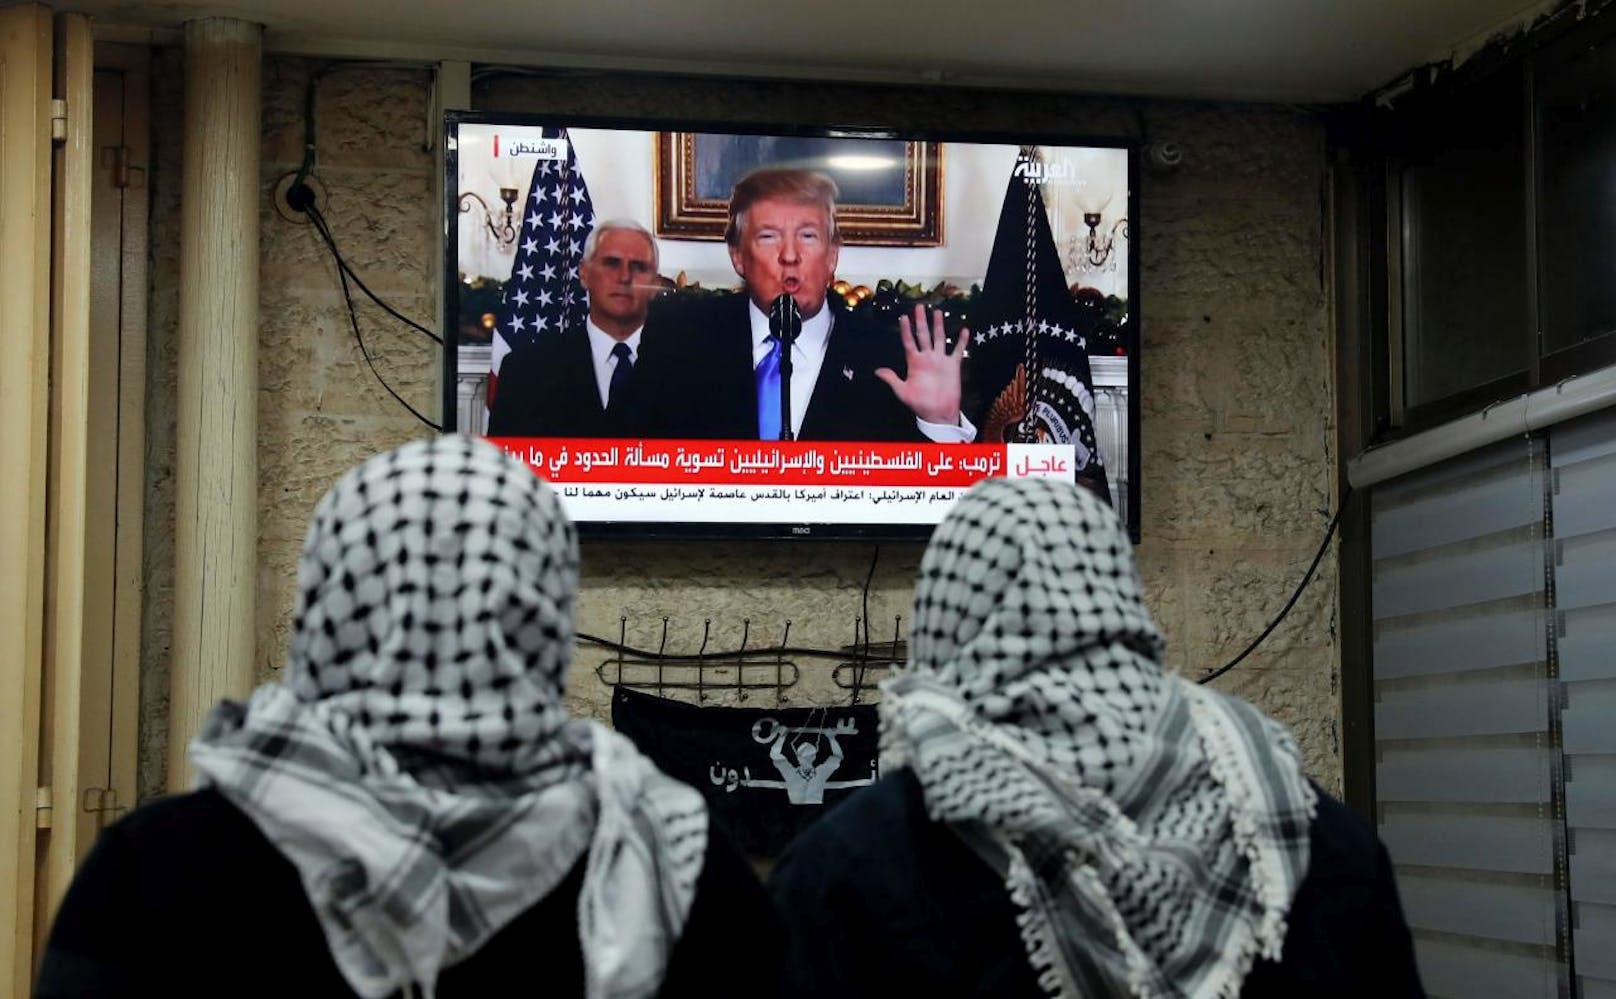 Die Arabische Liga hat die Entscheidung von Trump bereits vorab scharf verurteilt. Die Bekanntgabe wäre eine "ungerechtfertigte Provokation" für Menschen in der arabischen Welt.